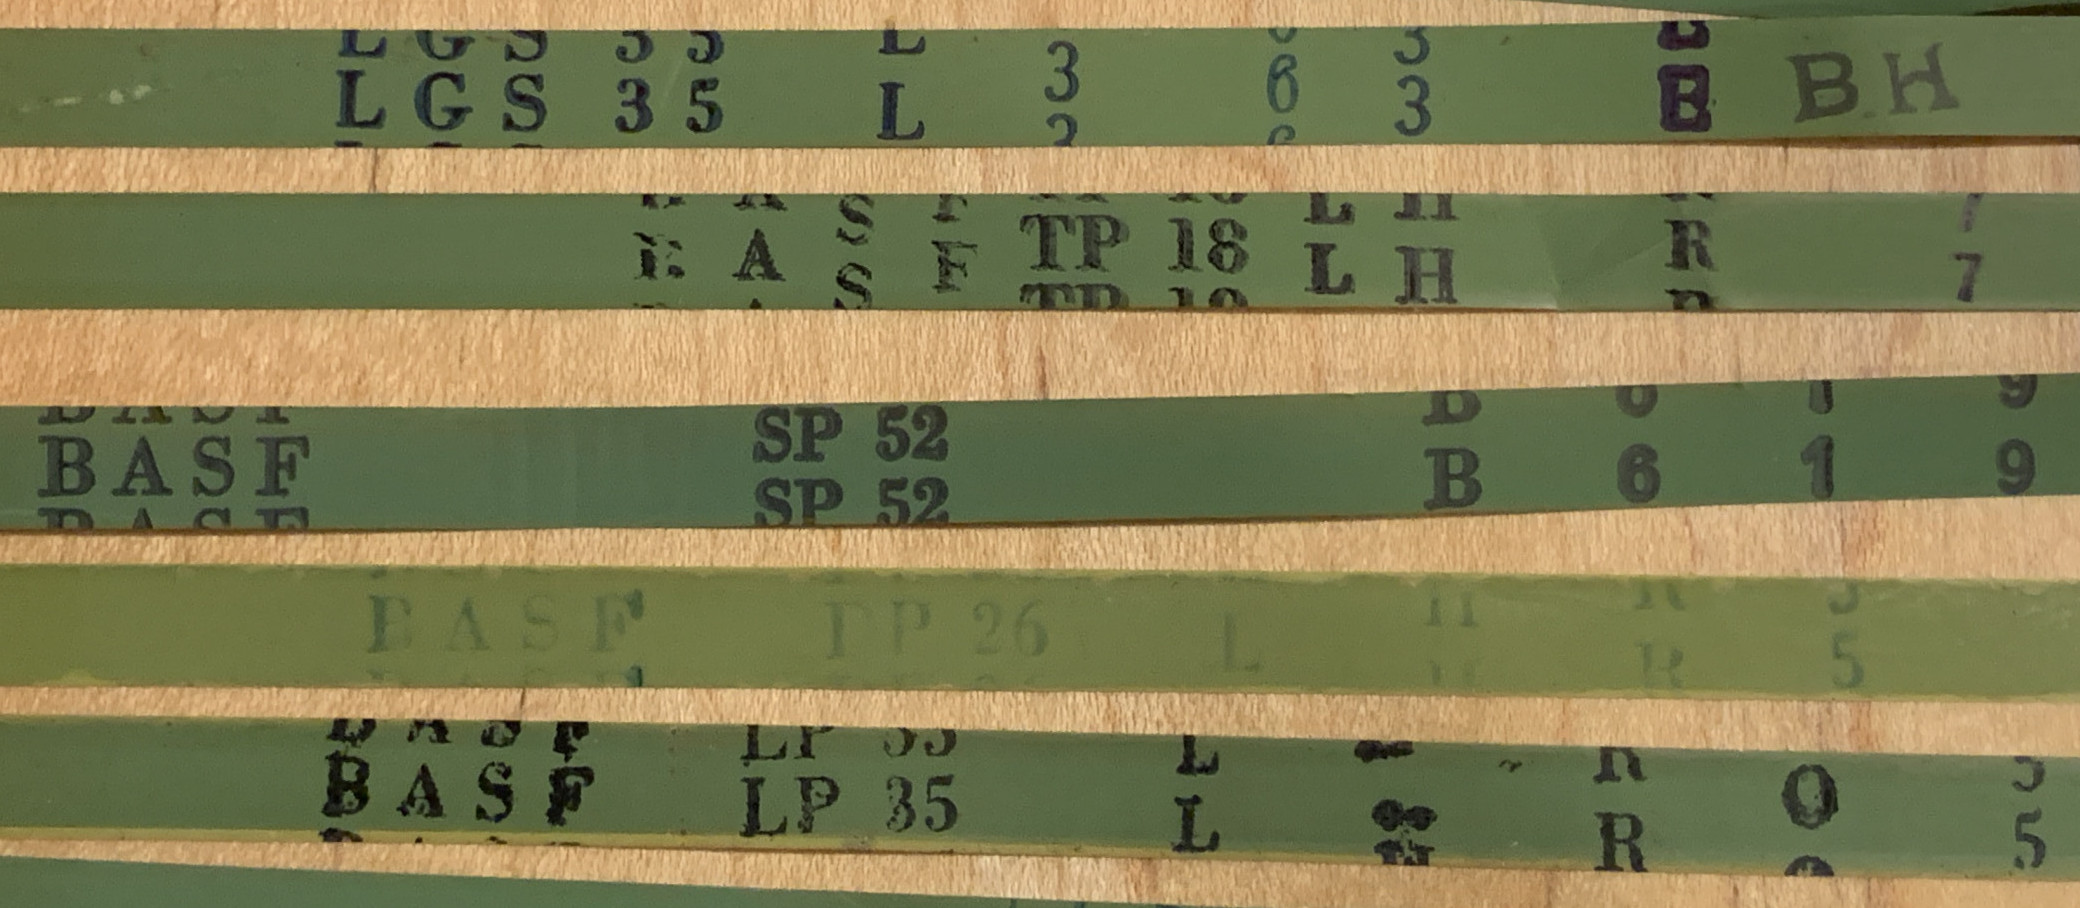 Identifying BASF Reel to Reel Tape Types